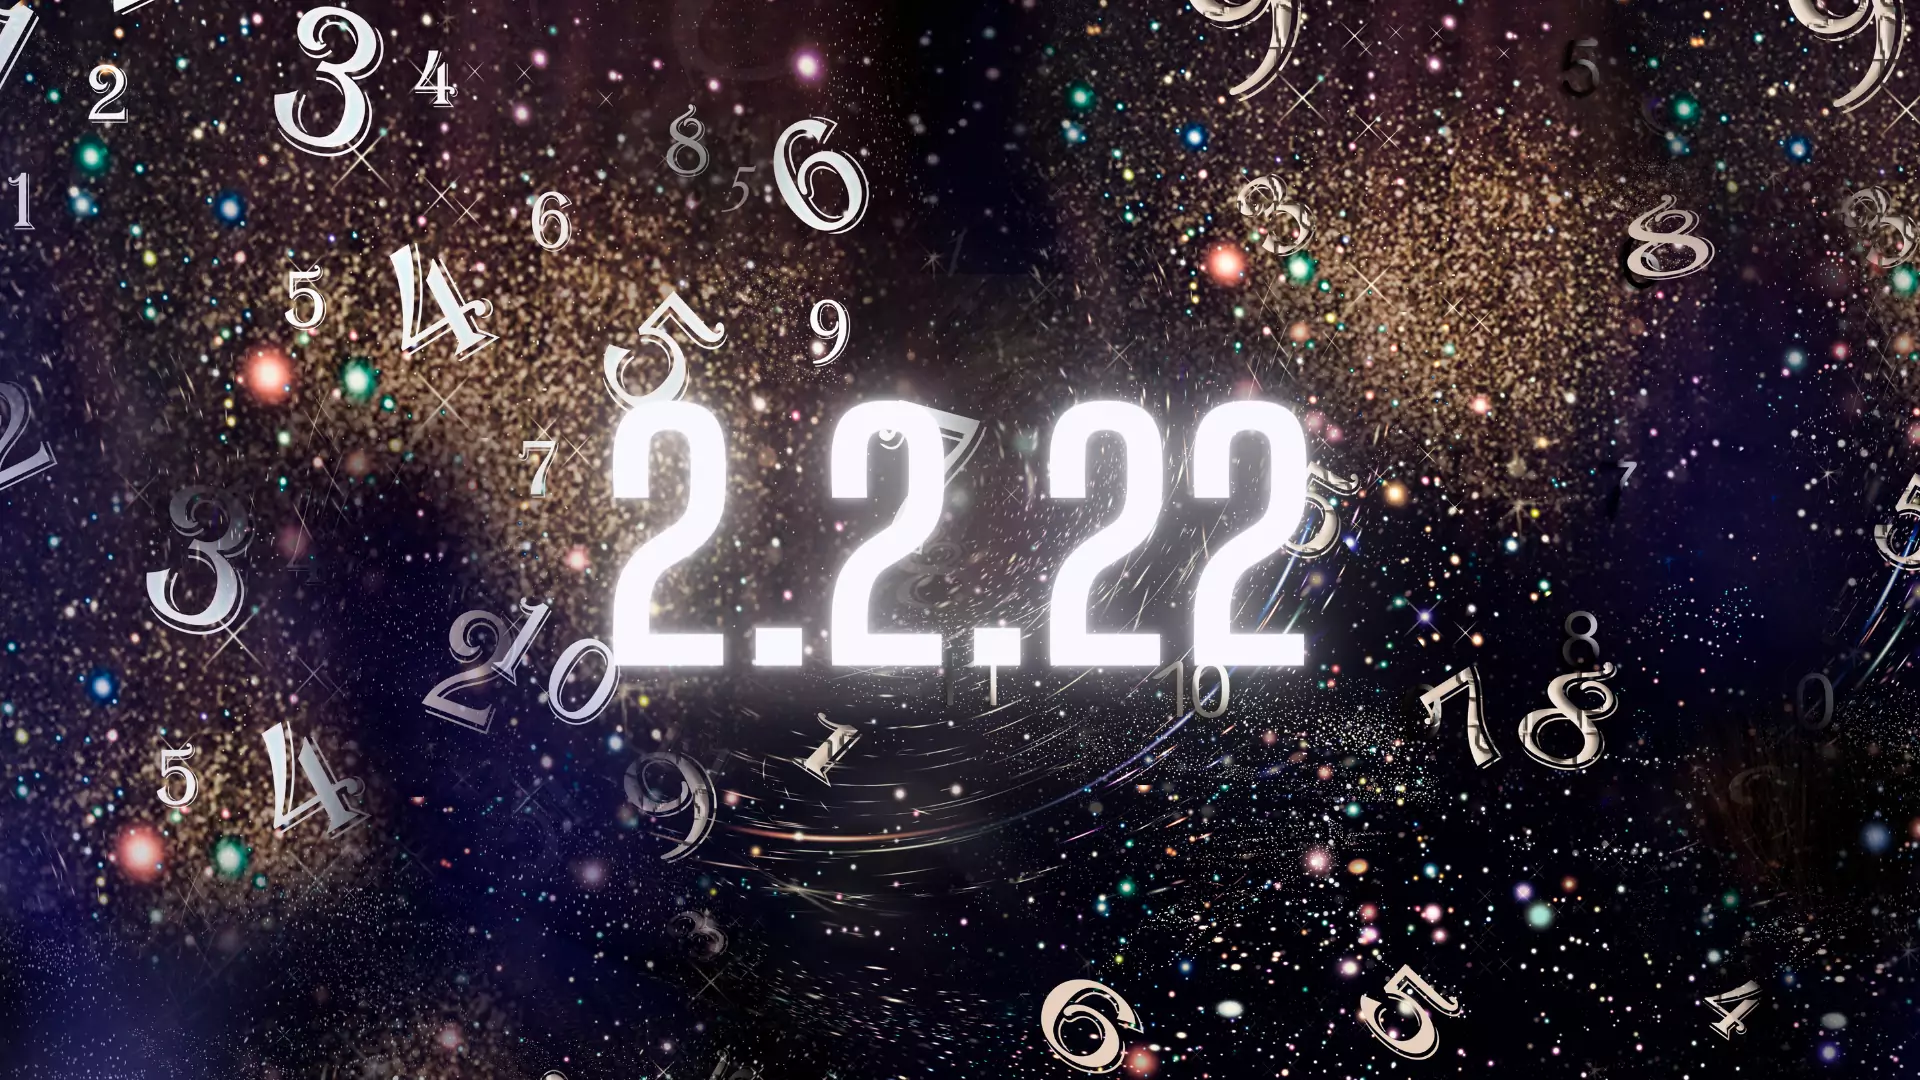 Data 2.2.2022 - co oznaczają anielskie liczby? Ten dzień jest wyjątkowy